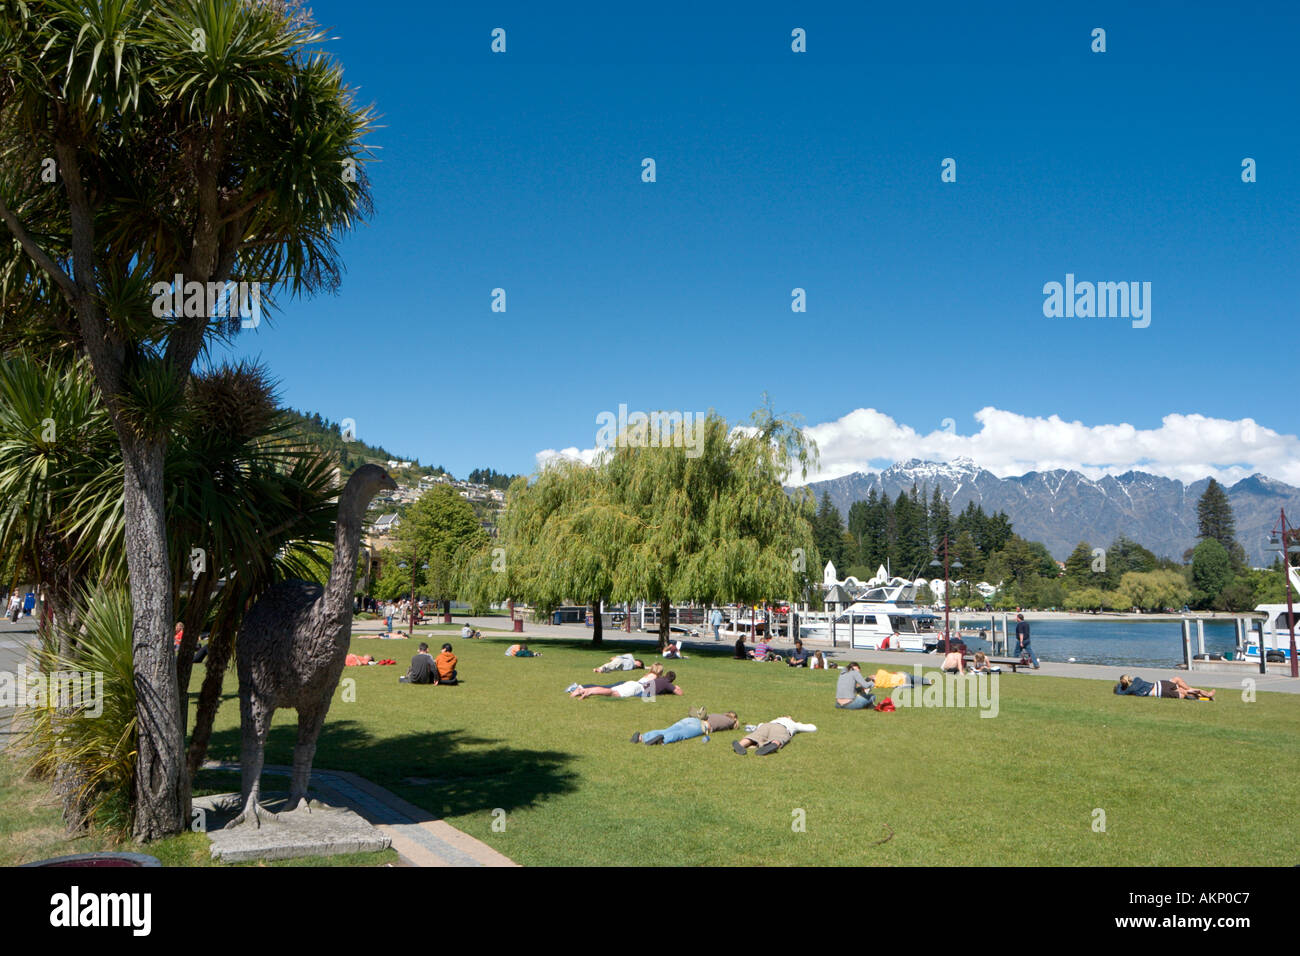 Quai du parc et sur les rives du lac Wakatipu, Queenstown, île du Sud, Nouvelle-Zélande Banque D'Images